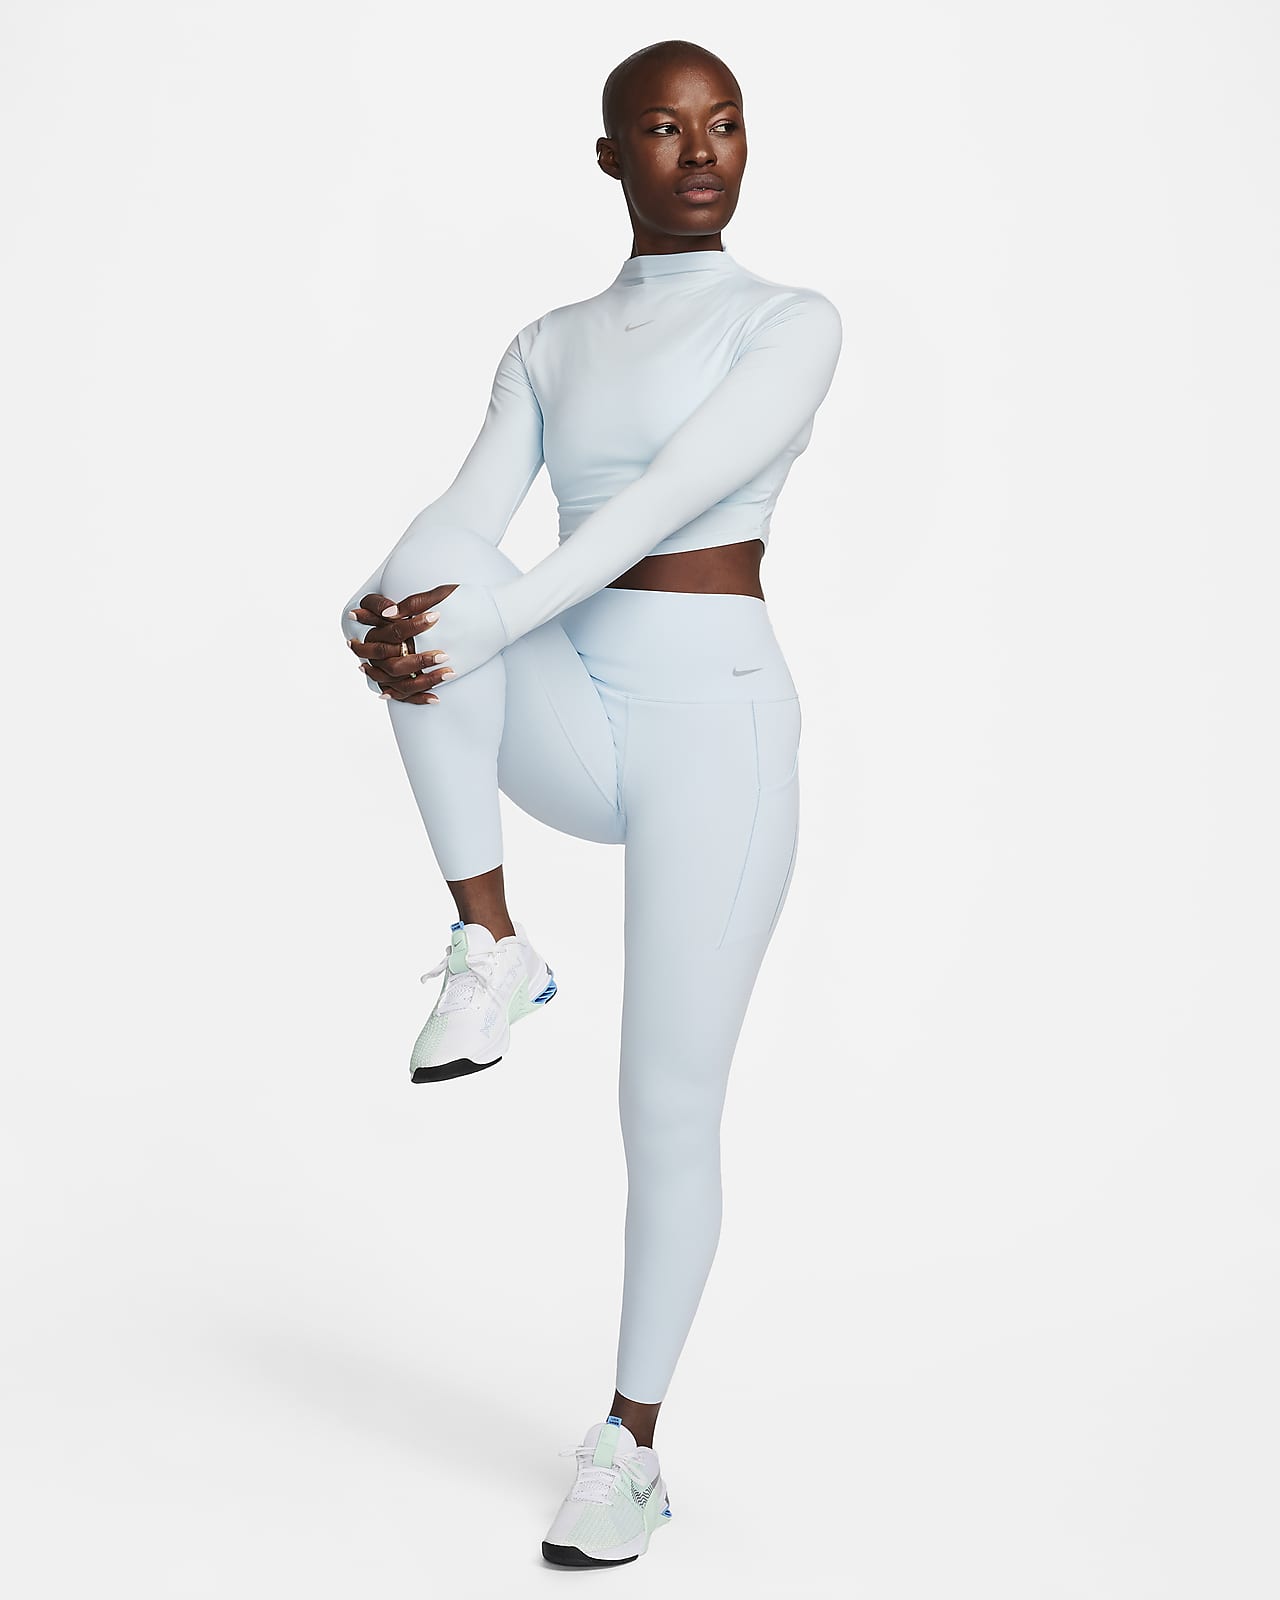 Haut à manches longues Dri-FIT Nike One Classic pour femme